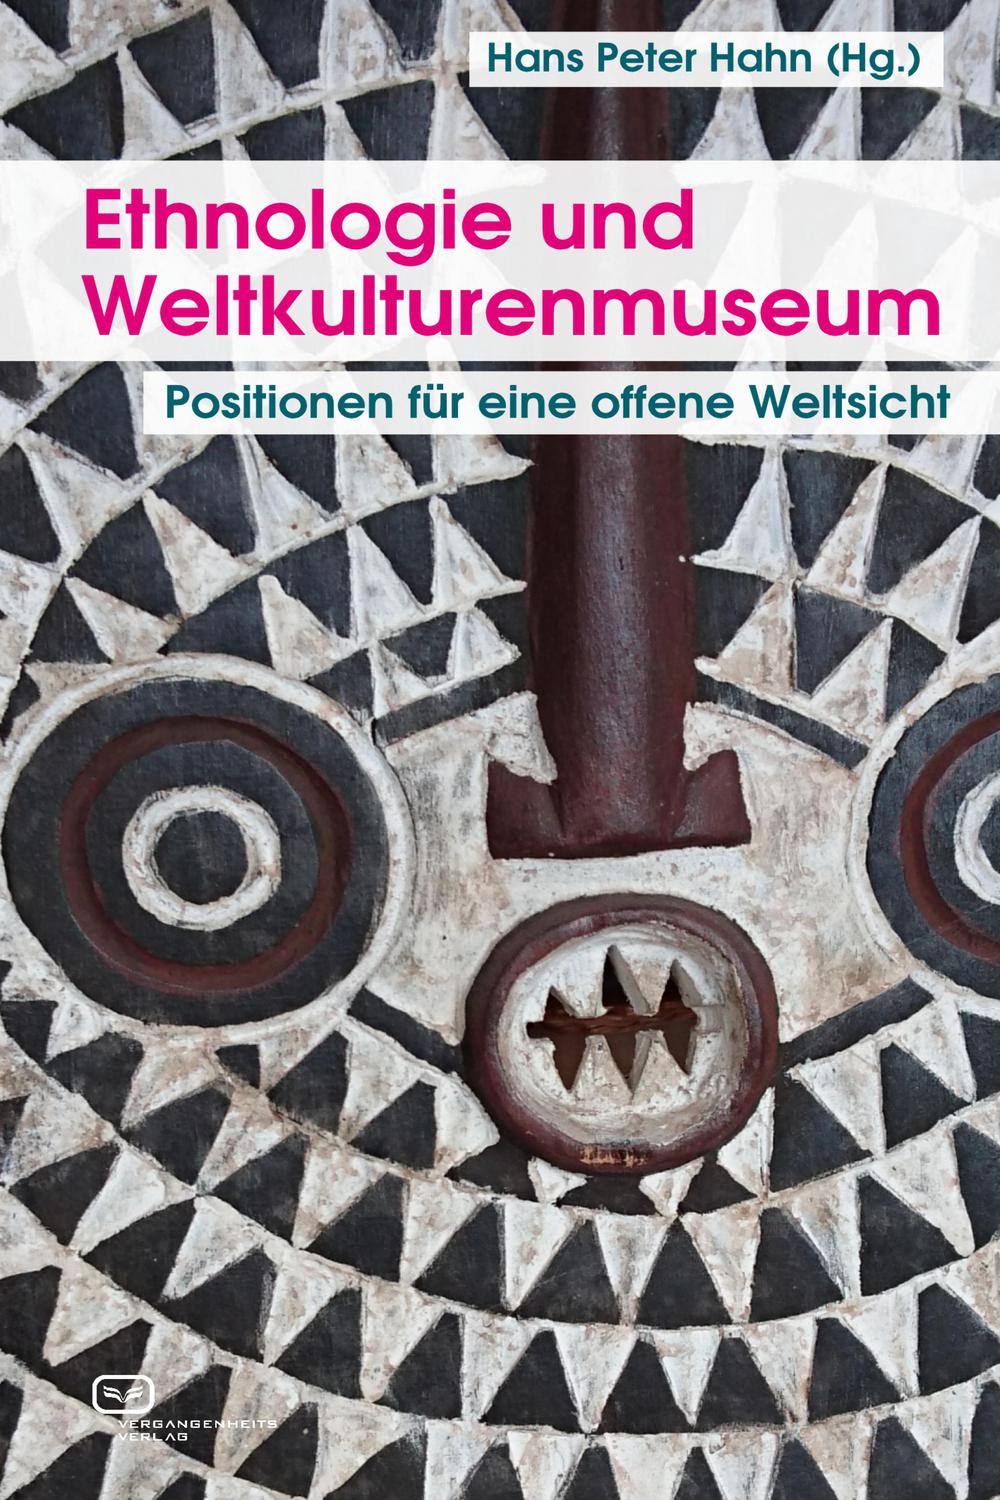 Ethnologie und Weltkulturenmuseum - Hans Peter Hahn, Paola Ivanov, Helmut Groschwitz, Thomas Laely